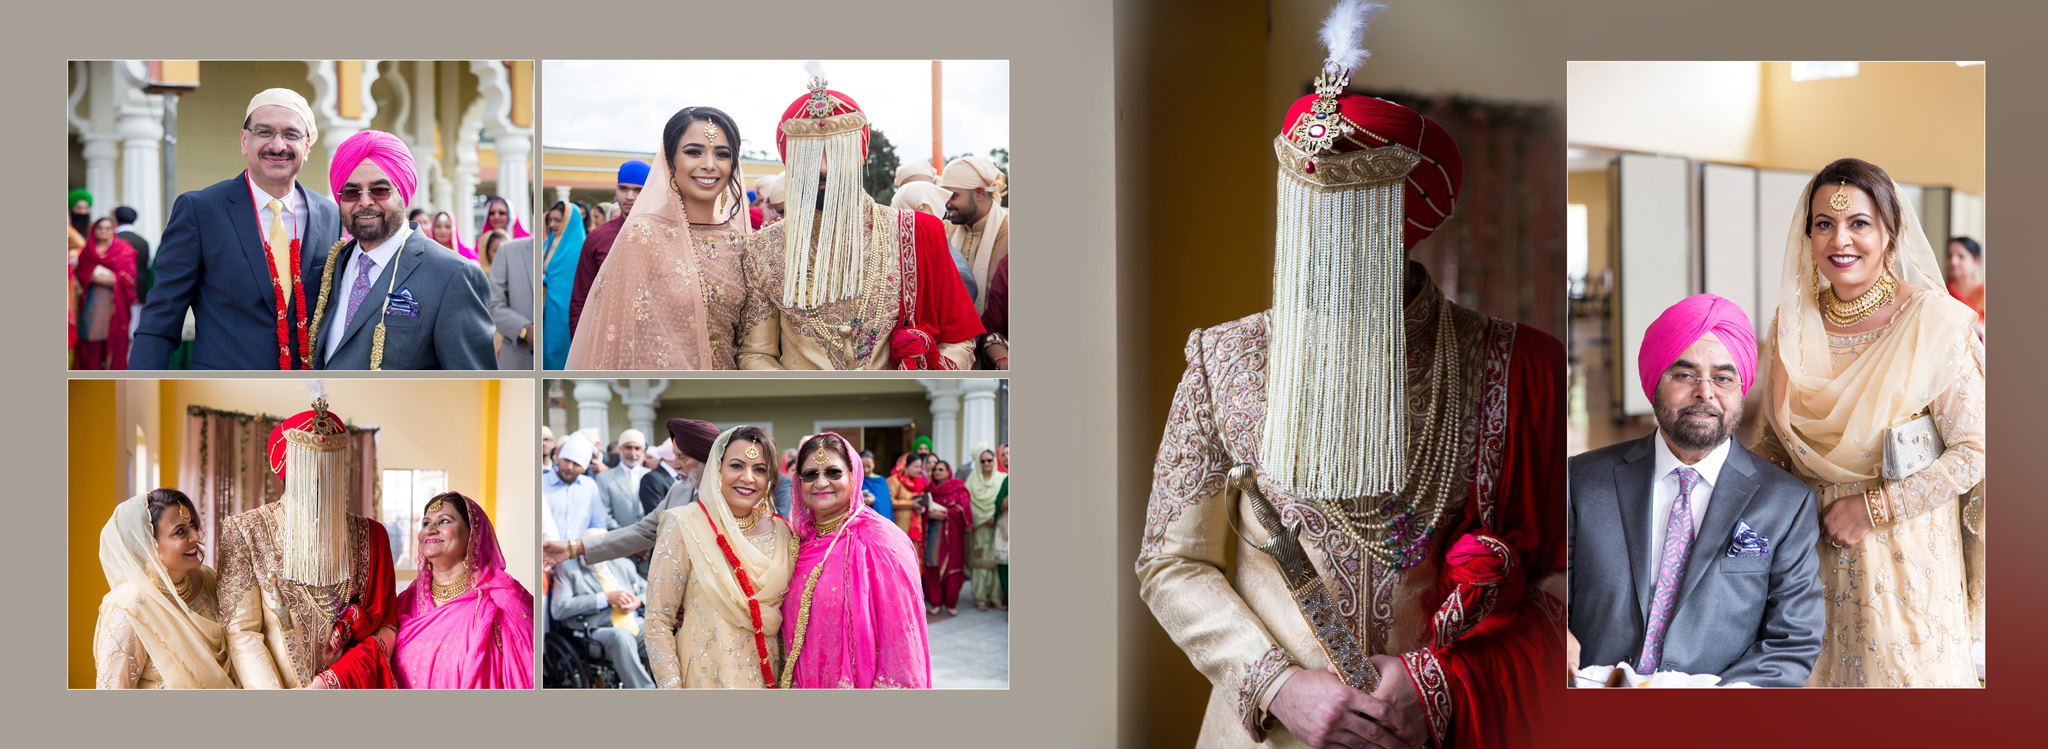 Indian wedding album design milni ceremony